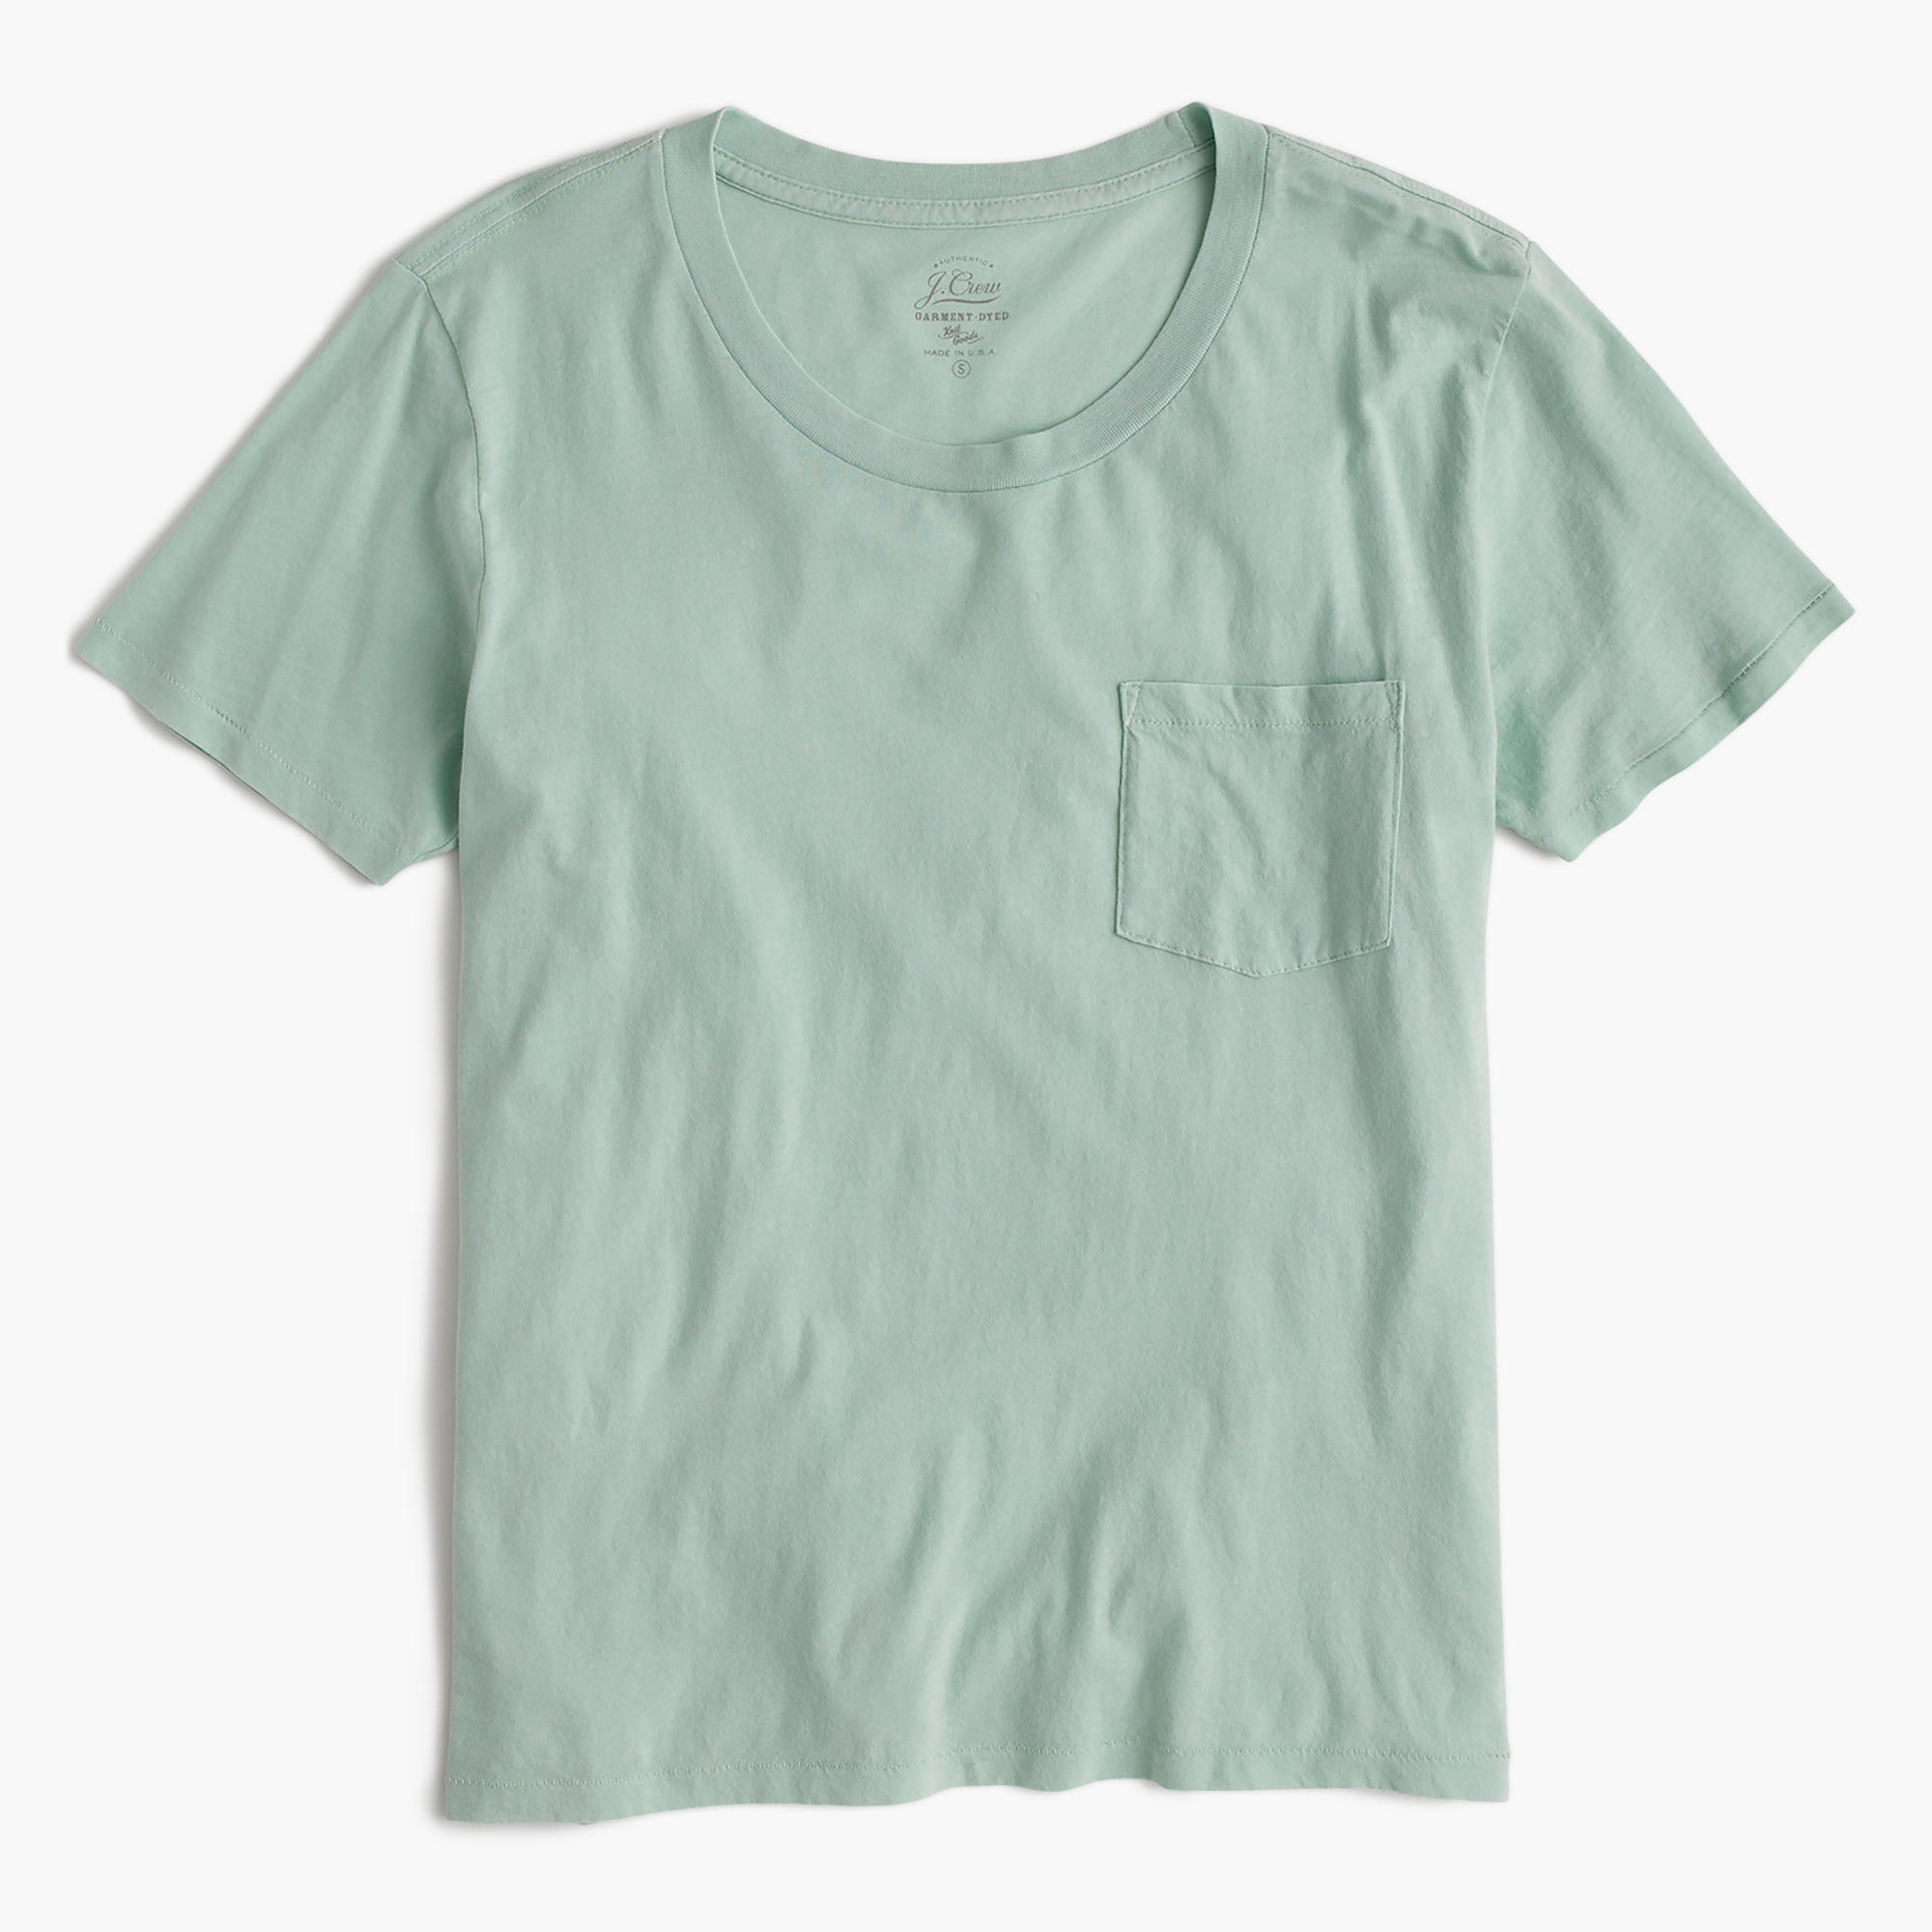 Sage color t-shirt